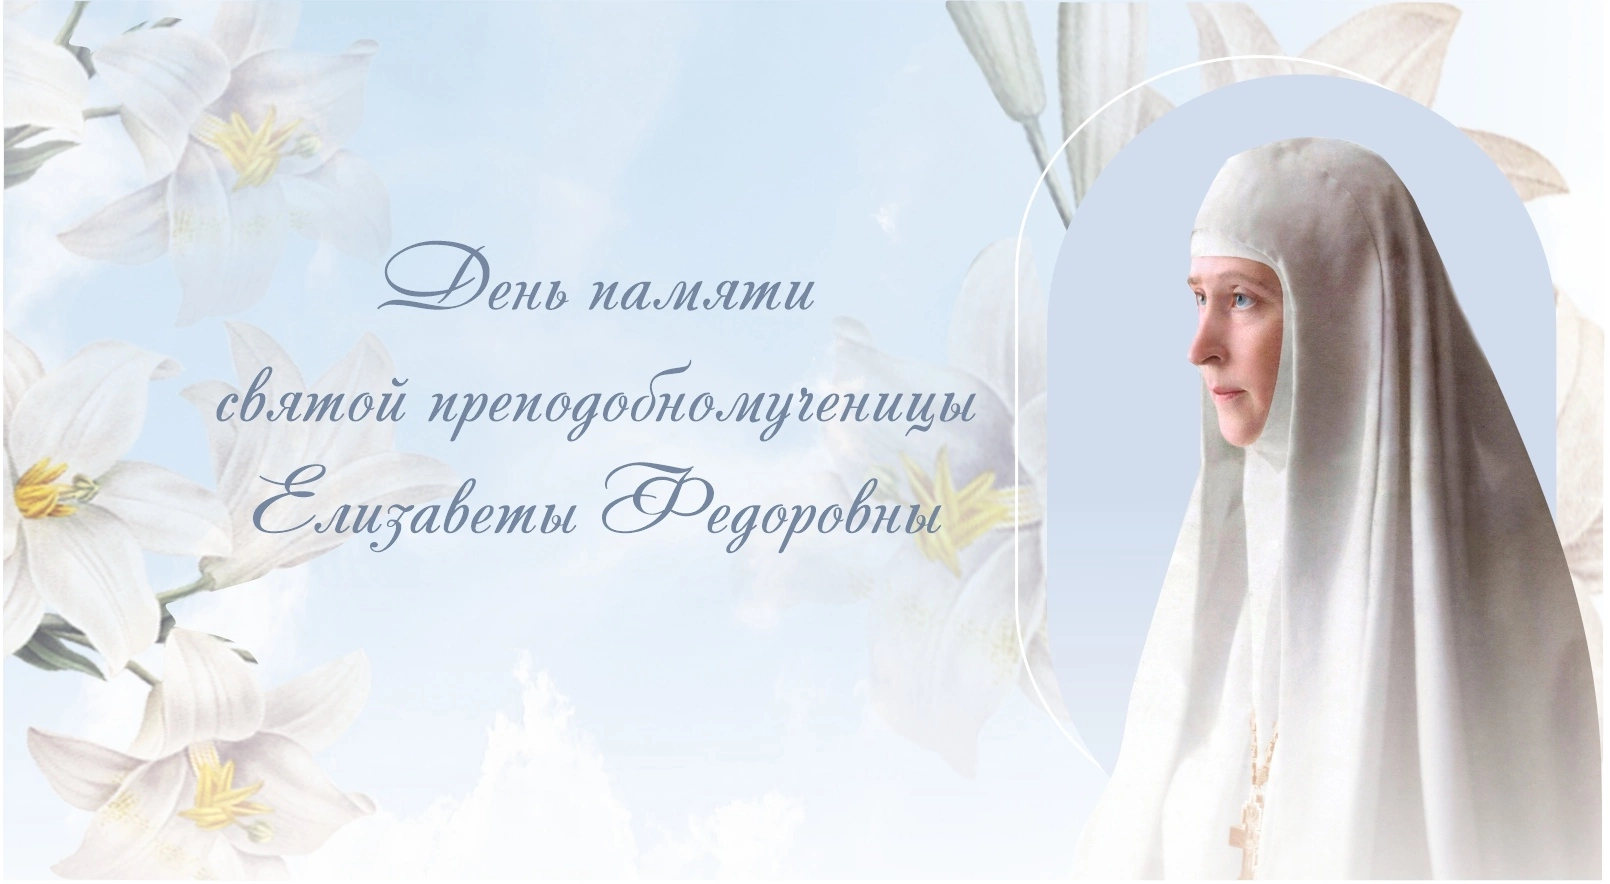 В день памяти Великой княгини Елизаветы Федоровны в Марфо-Мариинской обители пройдут праздничные мероприятия